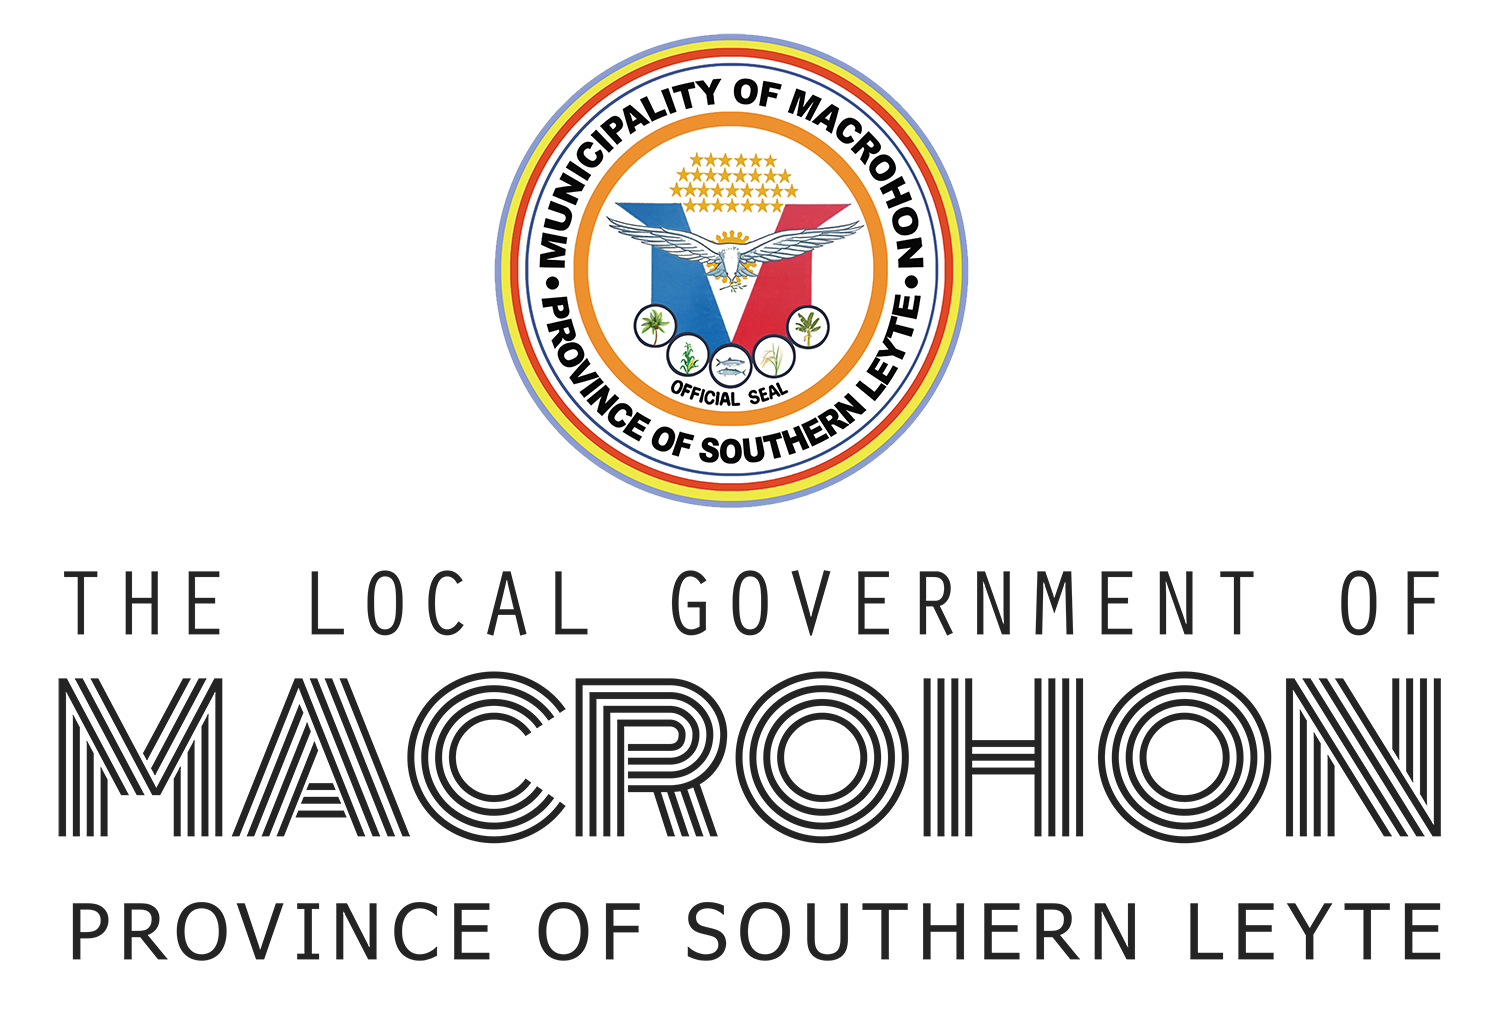 Municipality of Macrohon